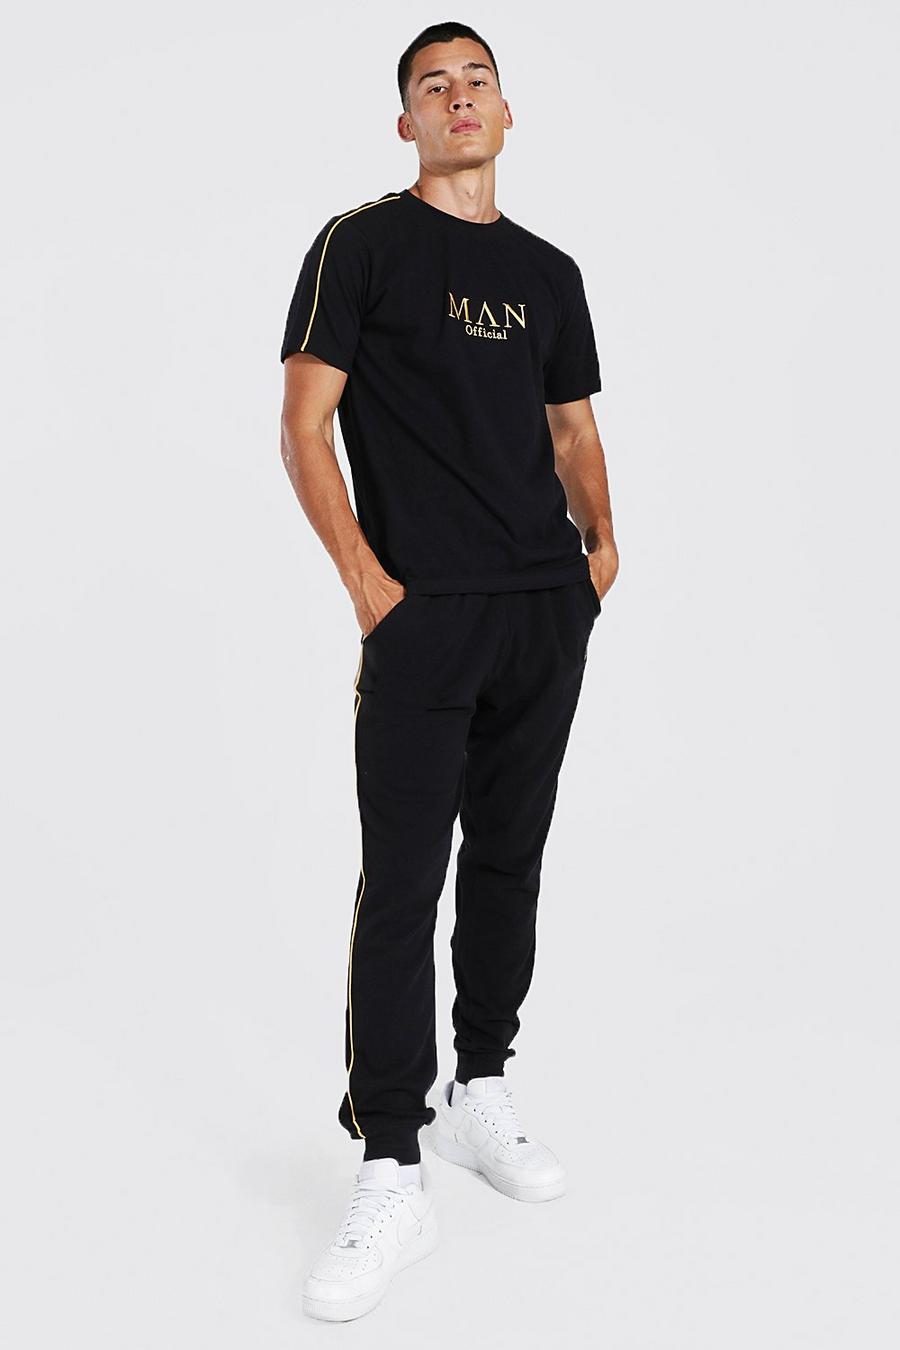 Pantalón deportivo con ribete y camiseta con letras MAN doradas, Black negro image number 1